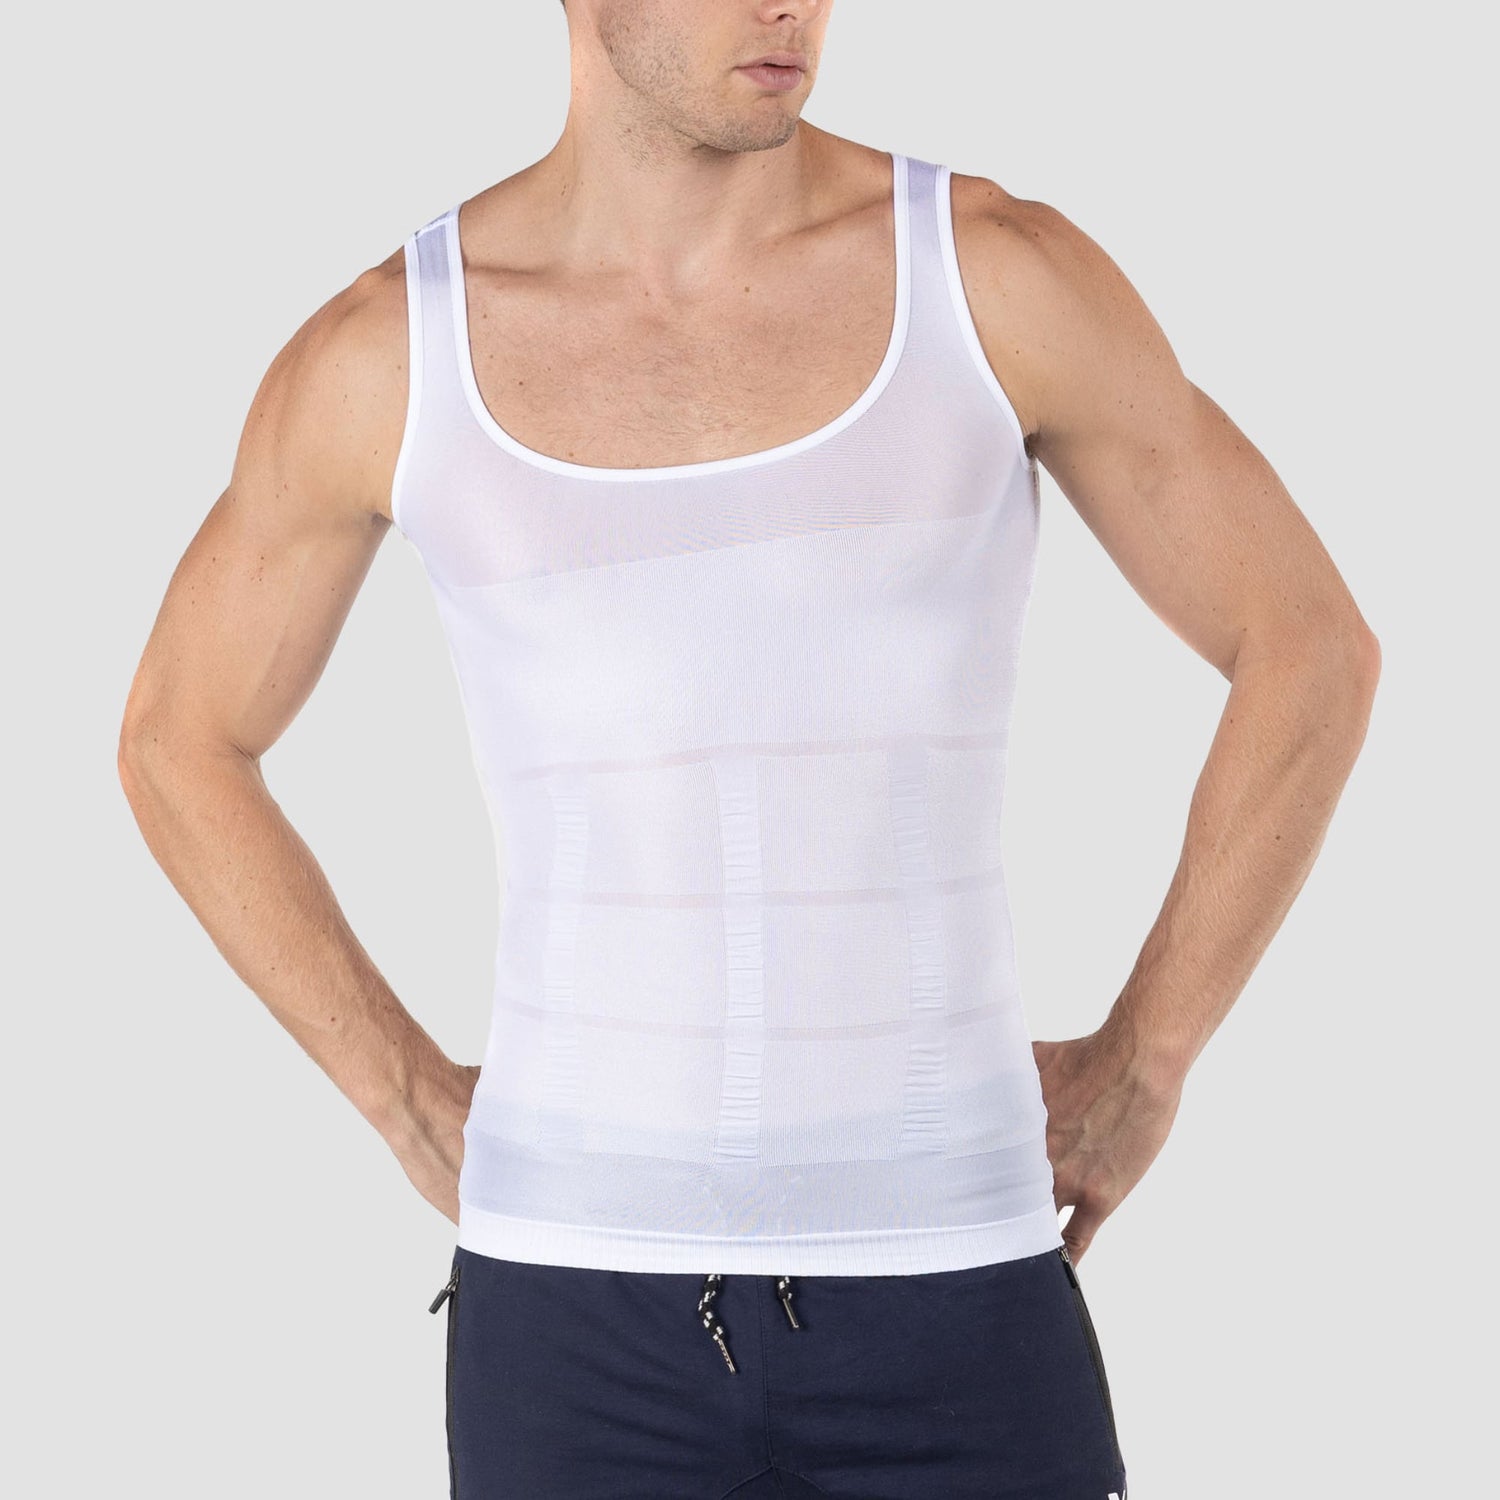 Pack Of 2 Slim 'N Lift Slimming Vest For Men (WHITE & BLACK)